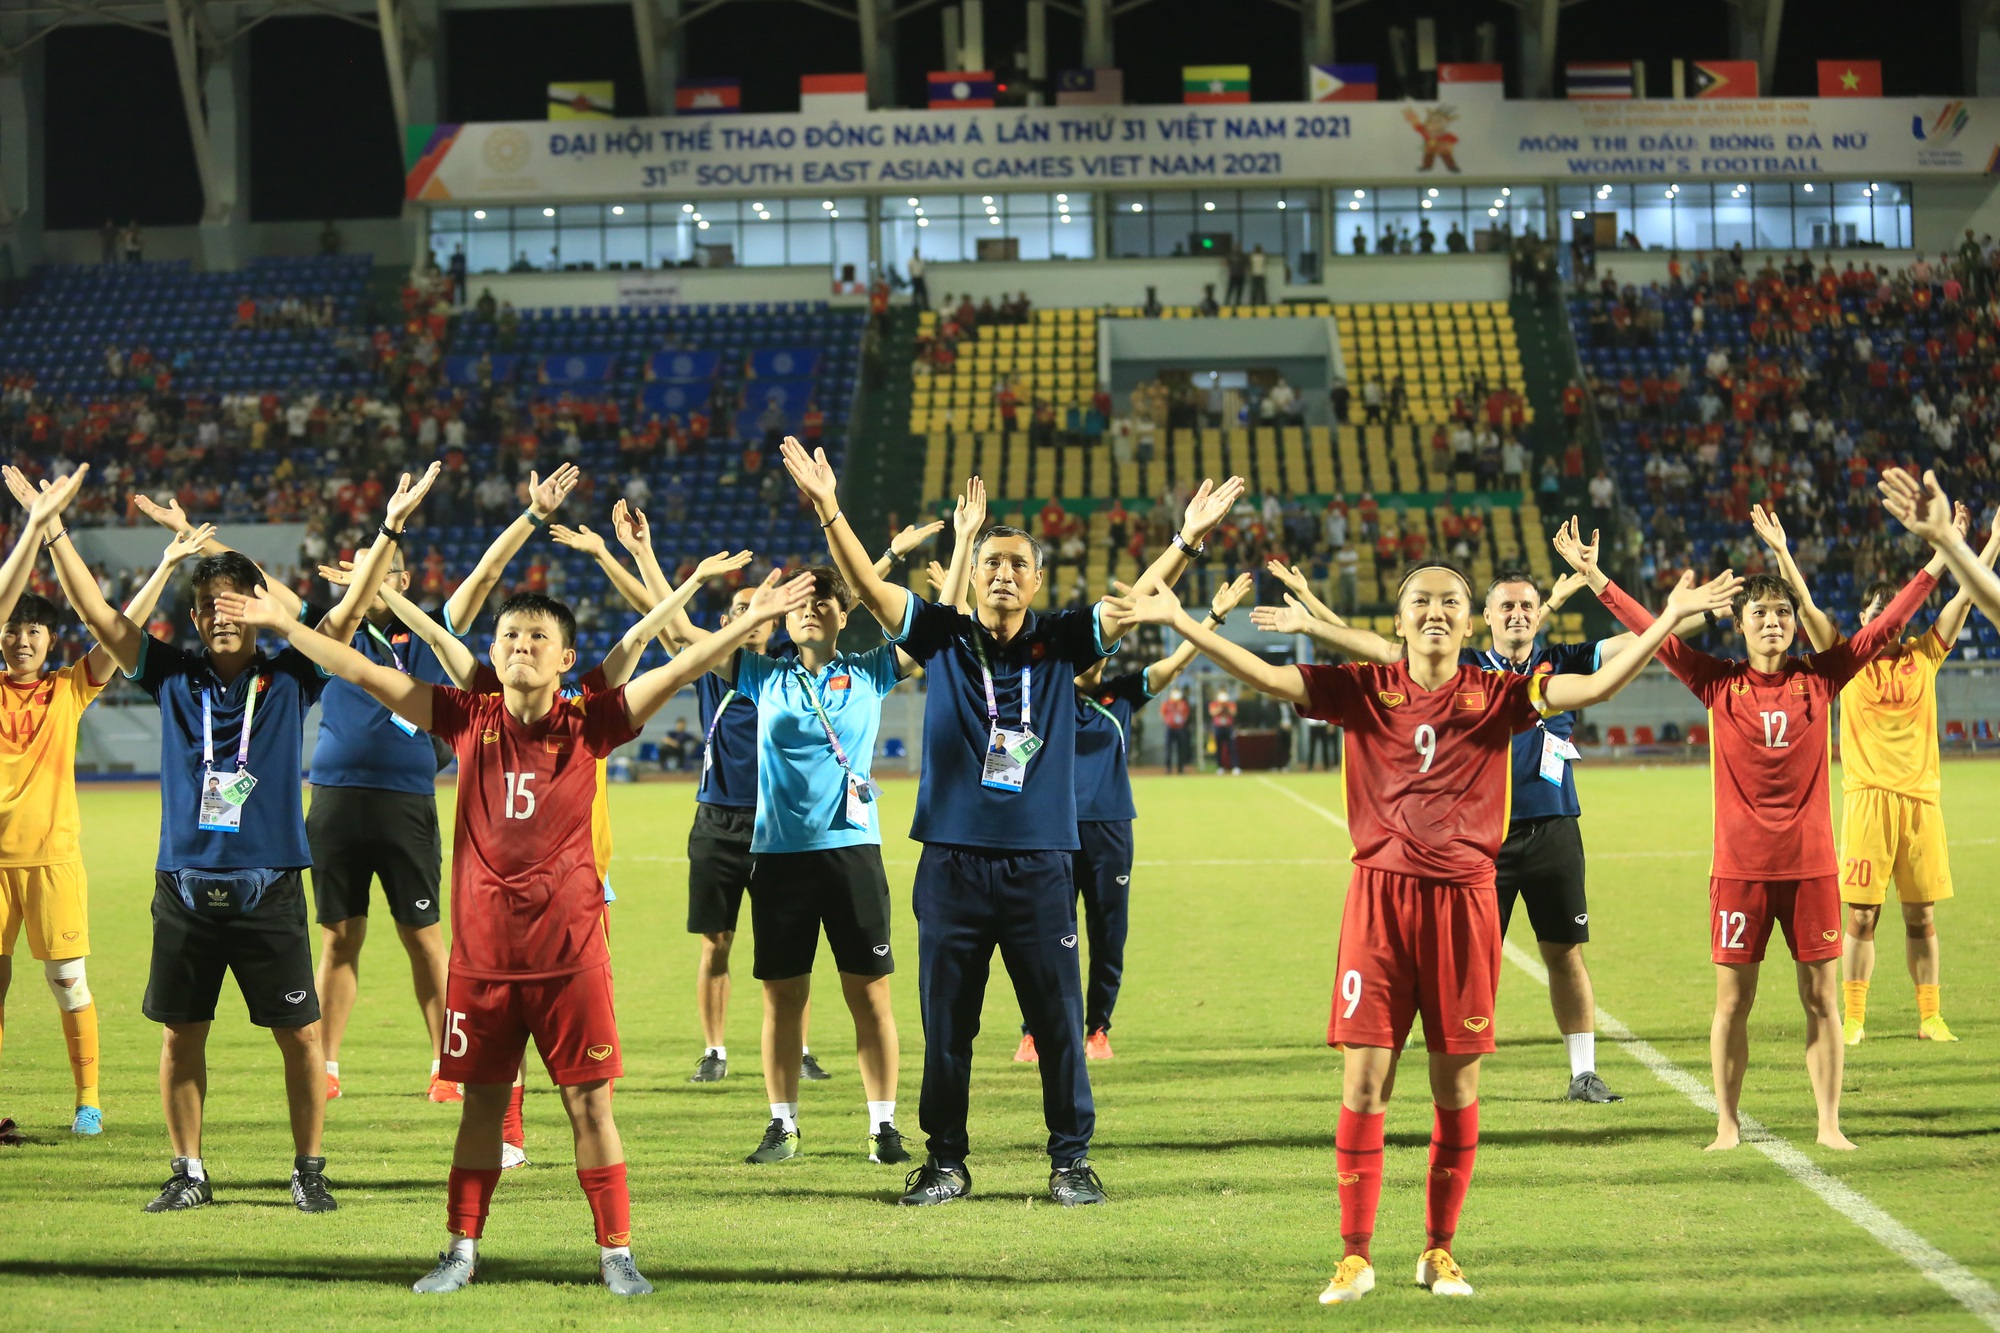 Bích Thuỳ dũng cảm lấy người chắn bóng, đội tuyển nữ Việt Nam giành vé vào chung kết SEA Games 31 - Ảnh 1.